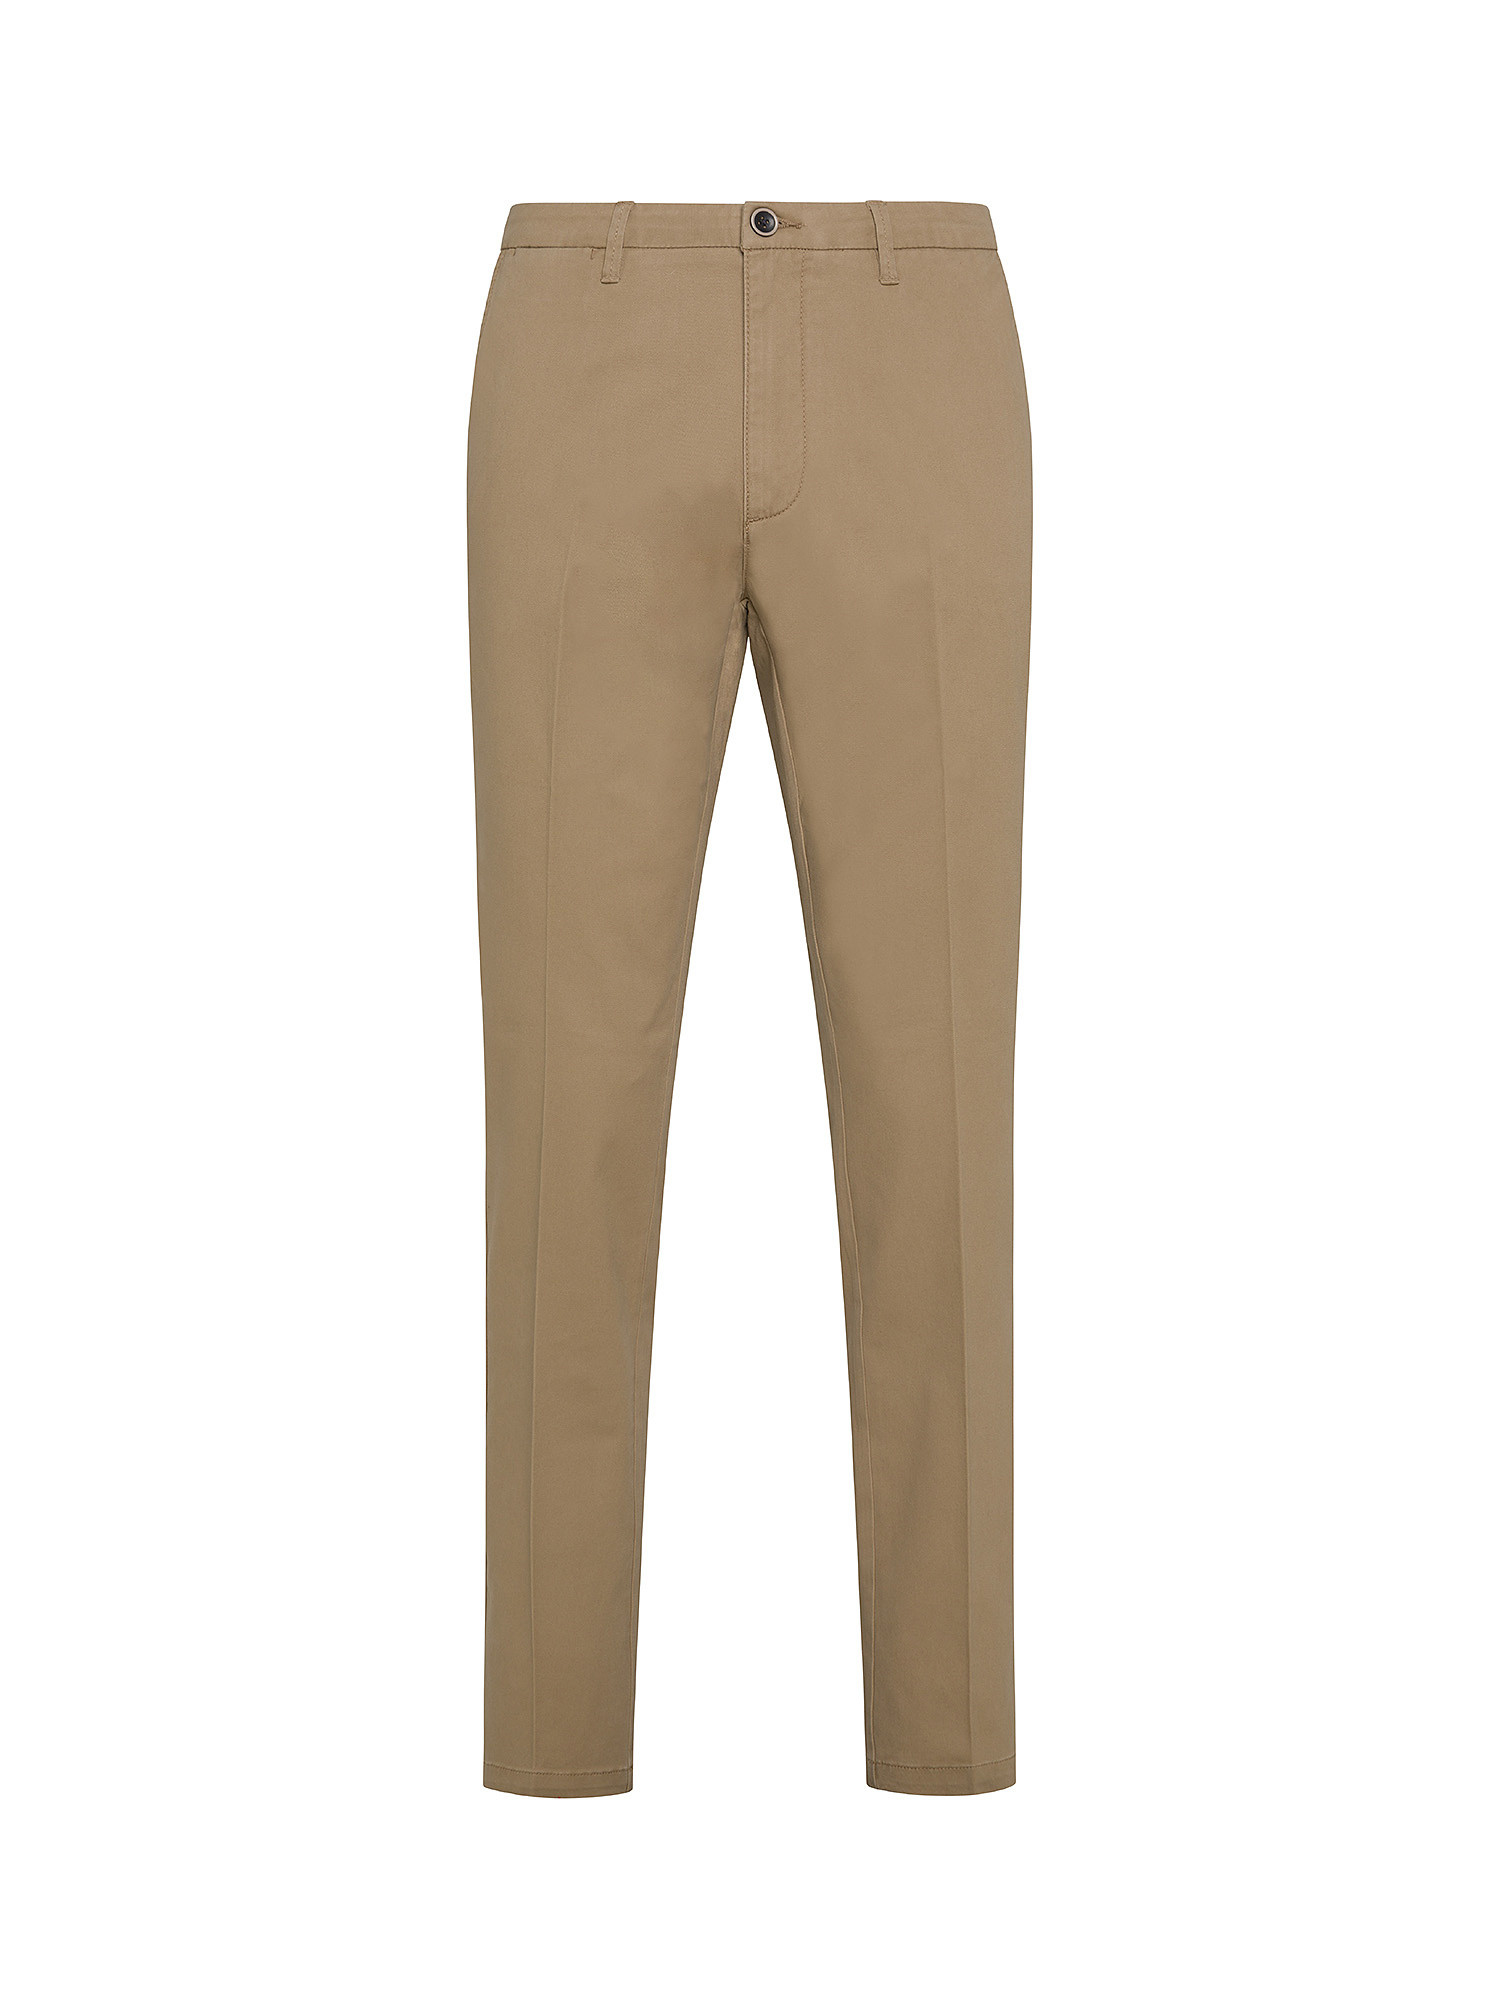 JCT - Pantaloni chino, Beige chiaro, large